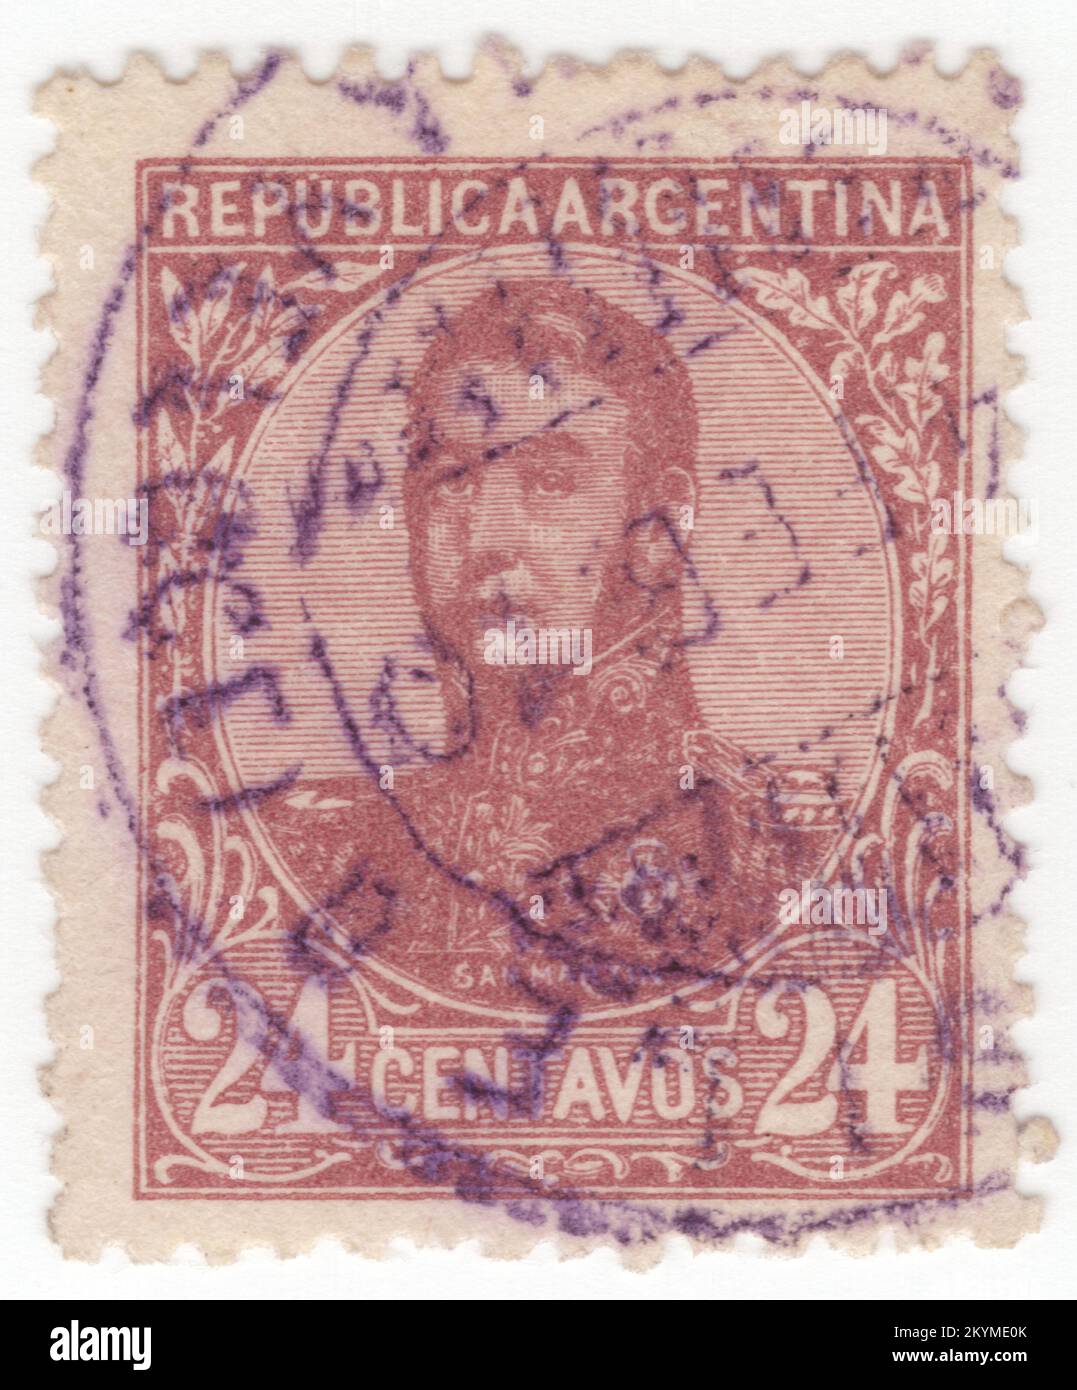 ARGENTINIEN - 1908: 24 Centavos rot-braune Briefmarke, die das Porträt von José de San Martín (Jose Francisco de San Martín y Matorras) darstellt, der als Liberator von Argentinien, Chile und Peru bekannt ist. Argentinischer General und der Hauptführer des südlichen und zentralen Teils des erfolgreichen Kampfes Südamerikas für die Unabhängigkeit vom Spanischen Reich, der als Beschützer von Peru diente. Geboren in Yapeyú, Corrientes, im modernen Argentinien, verließ er im frühen Alter von sieben Jahren das Vizekanzler der Río de la Plata, um in Málaga, Spanien, zu studieren Stockfoto